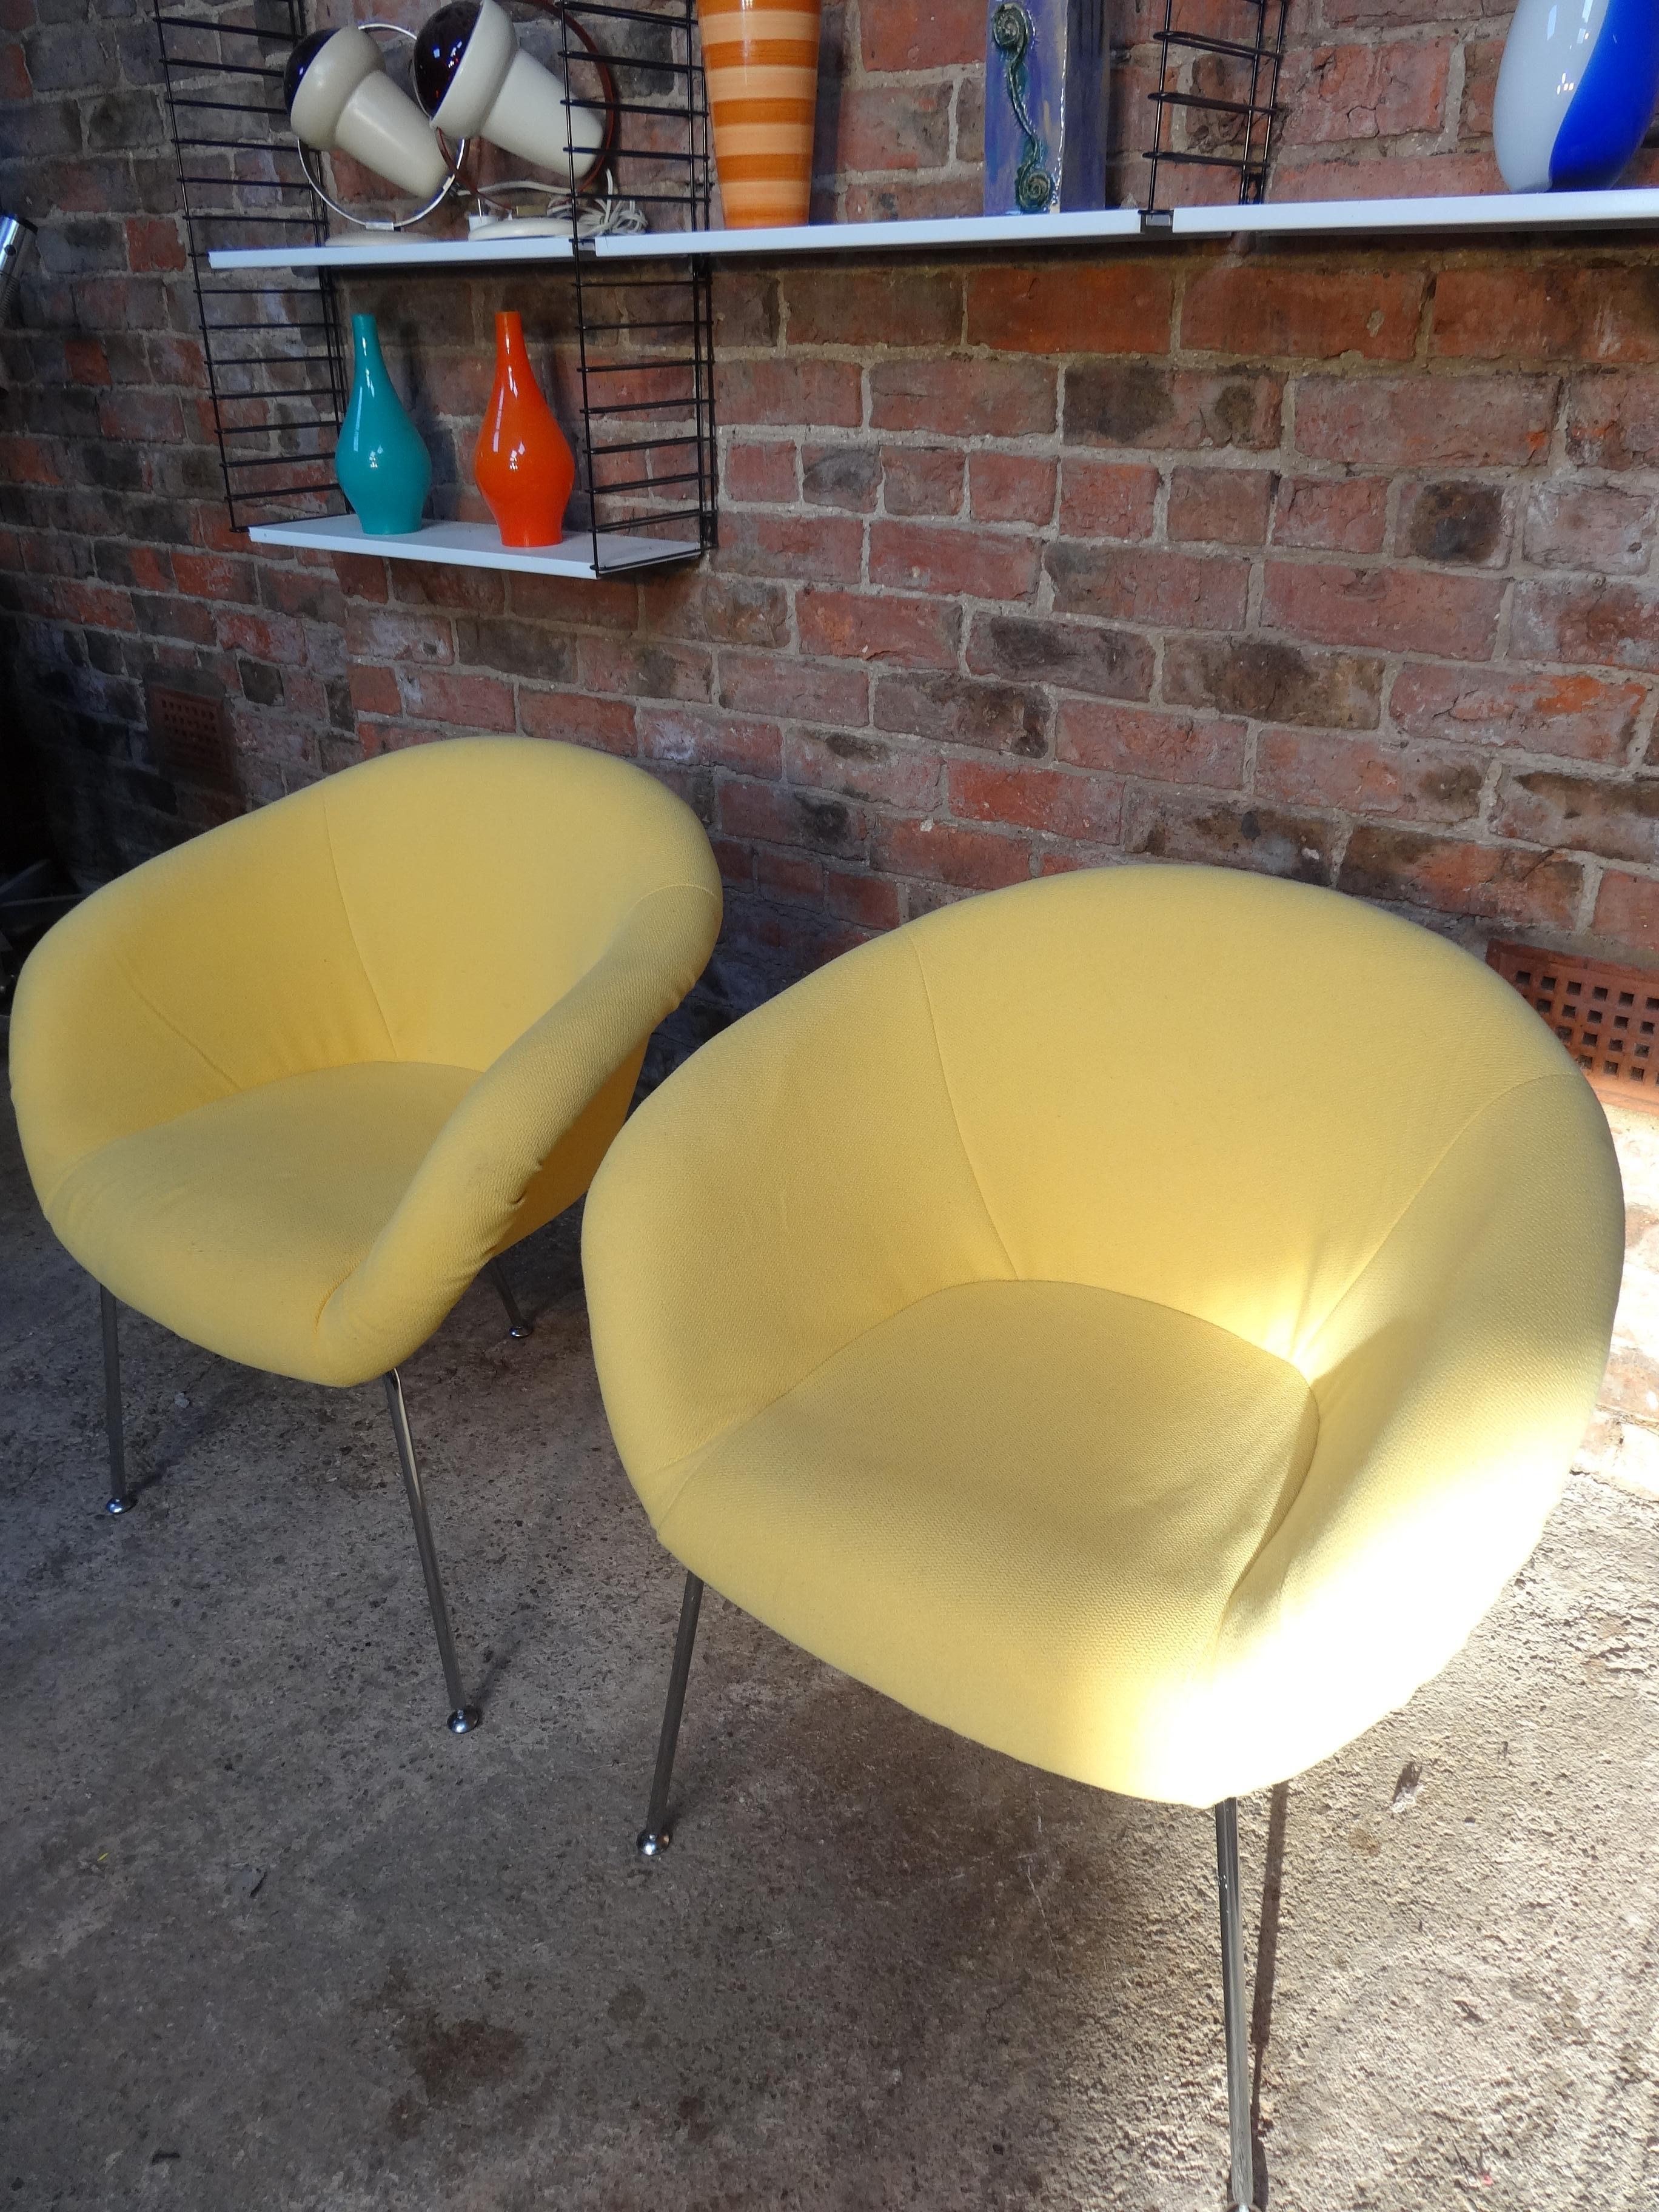 Vintage, retro 1960's Herman Miller gelben Stoff Vintage Stühle, schöne Designer-Stühle, haben einen gelben Stoff, der in sehr gutem Vintage-Zustand ist. Herman Miller ist ein historischer Name, der für gutes Design und Qualität steht. Klare,